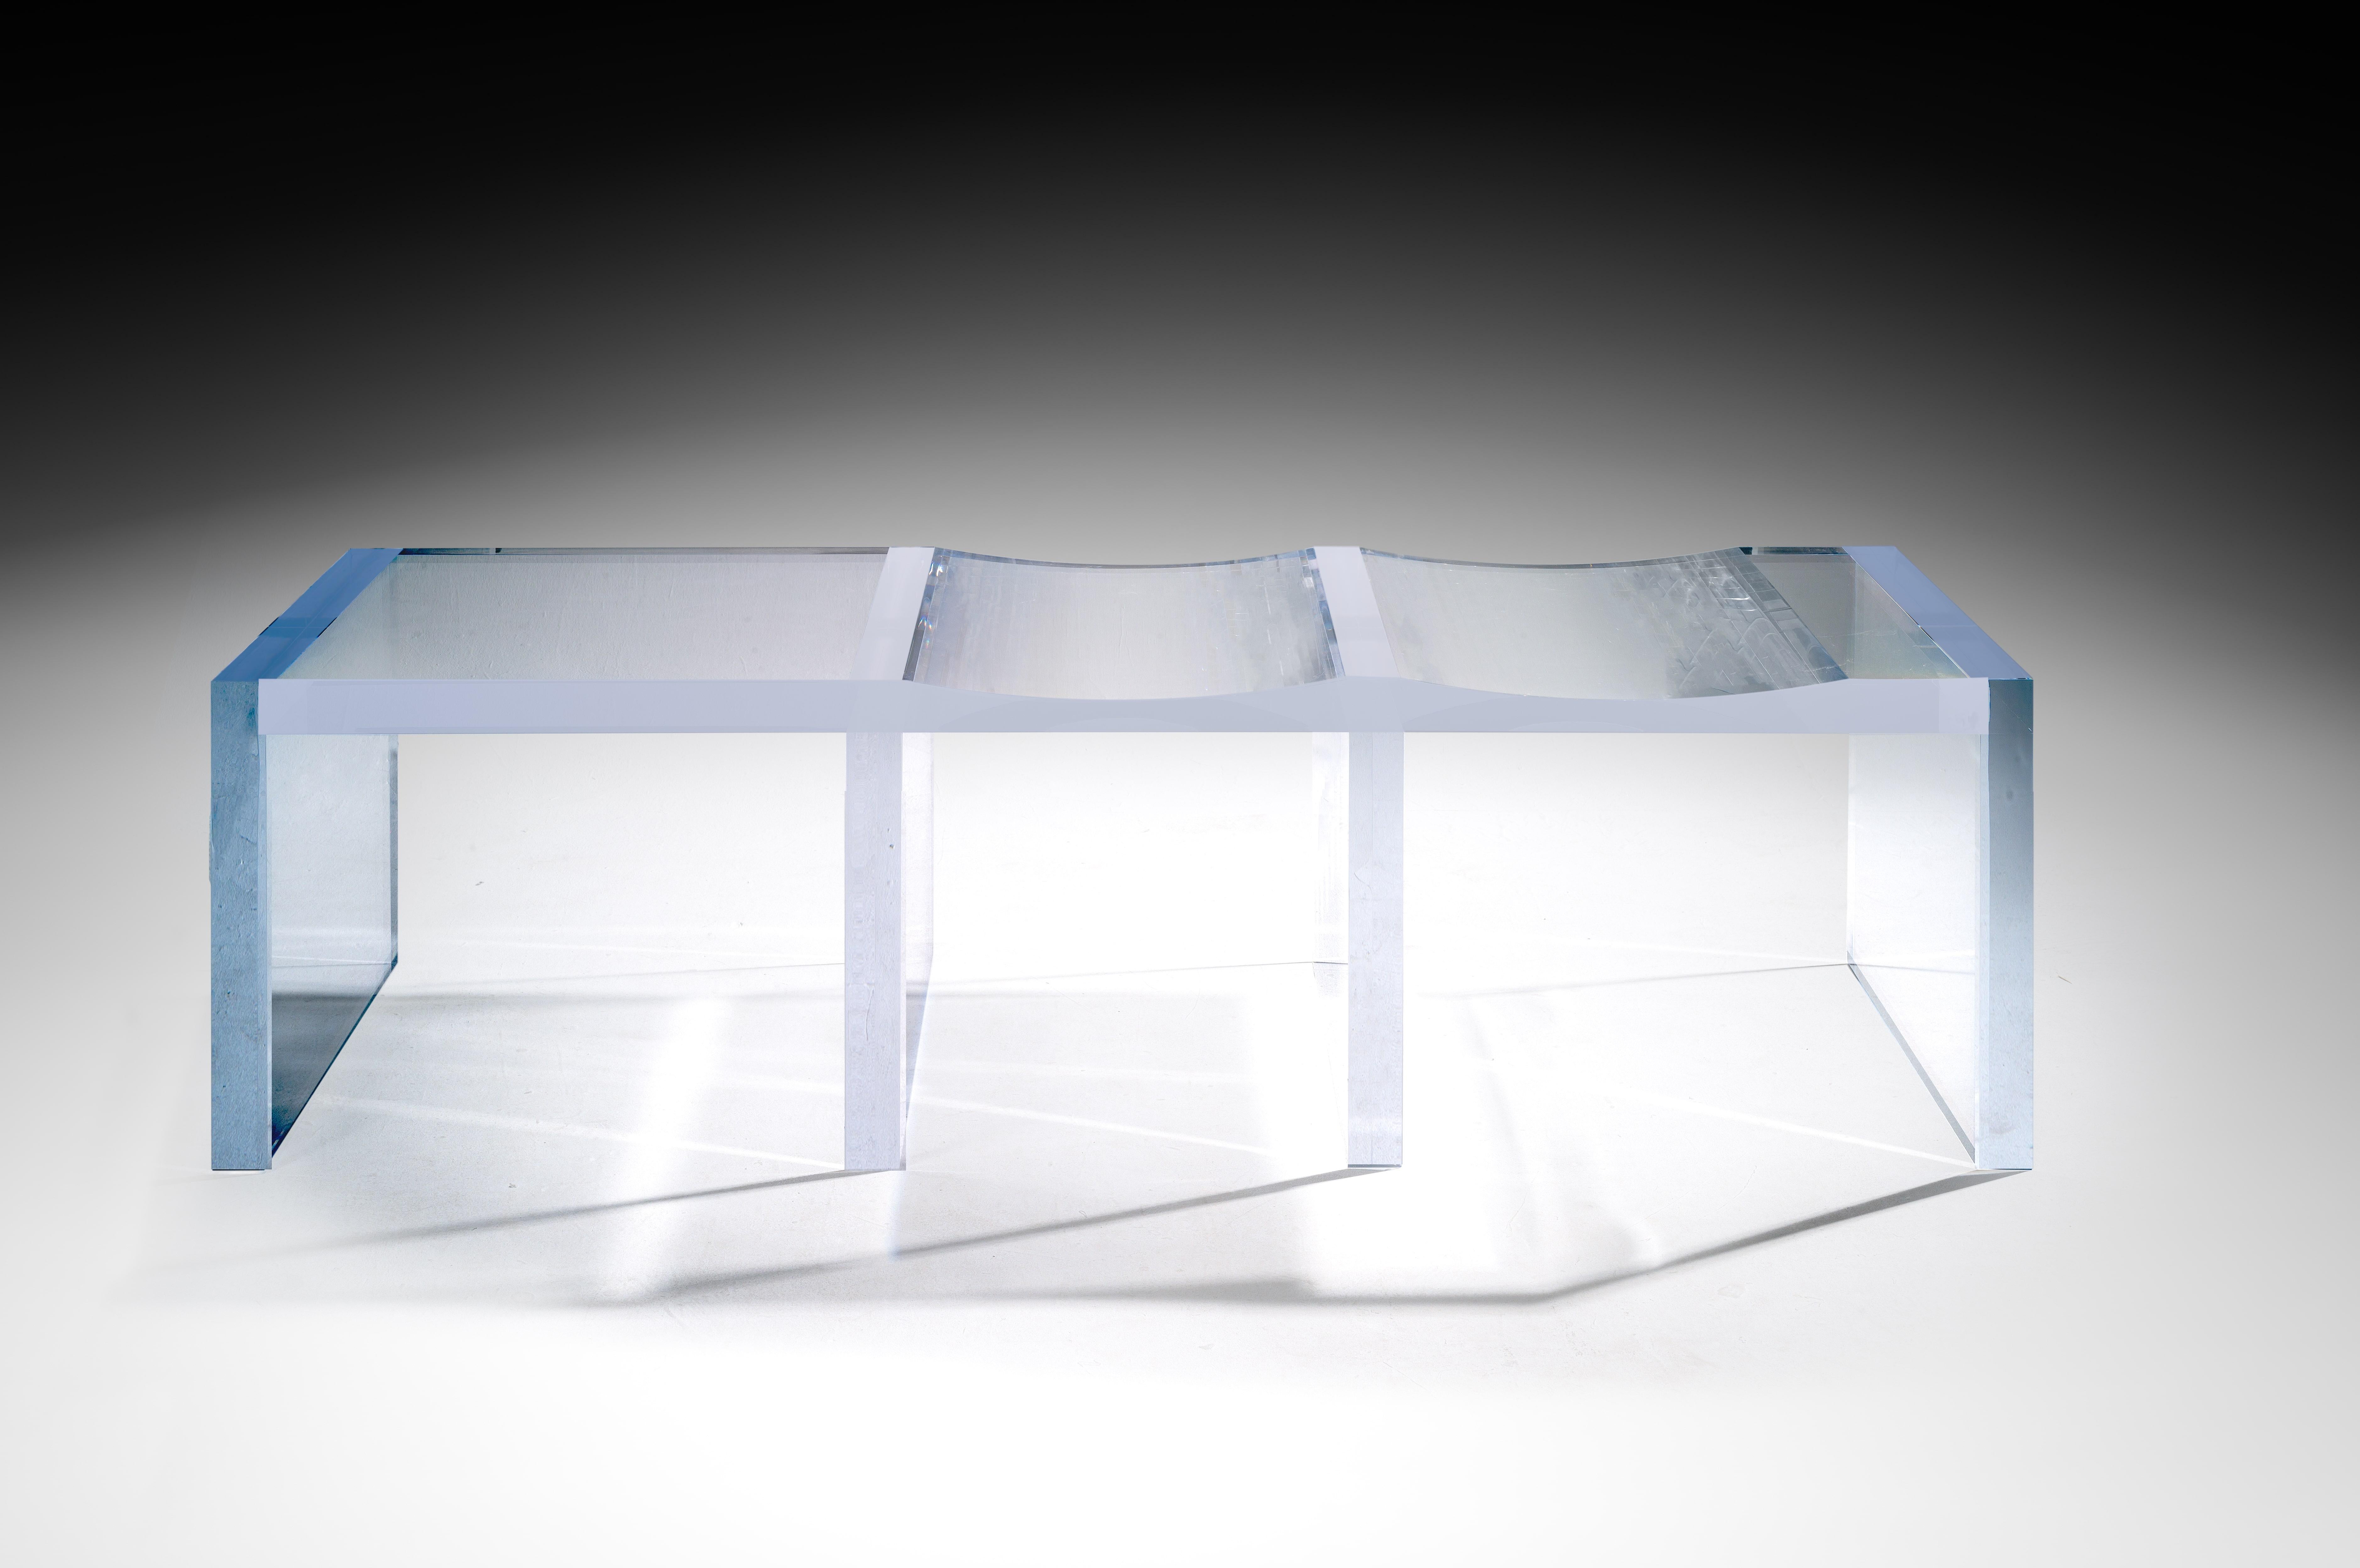 Ghost Bench von Charly Bounan
Einzigartig
Abmessungen: T 75 x B 200 x H 56 cm. 
MATERIALIEN: Acrylglas.

Bank für 4 Personen. Bitte kontaktieren Sie uns.

Charly Bounan ist ein Pariser Designer, der für seinen raffinierten kreativen Stil und den